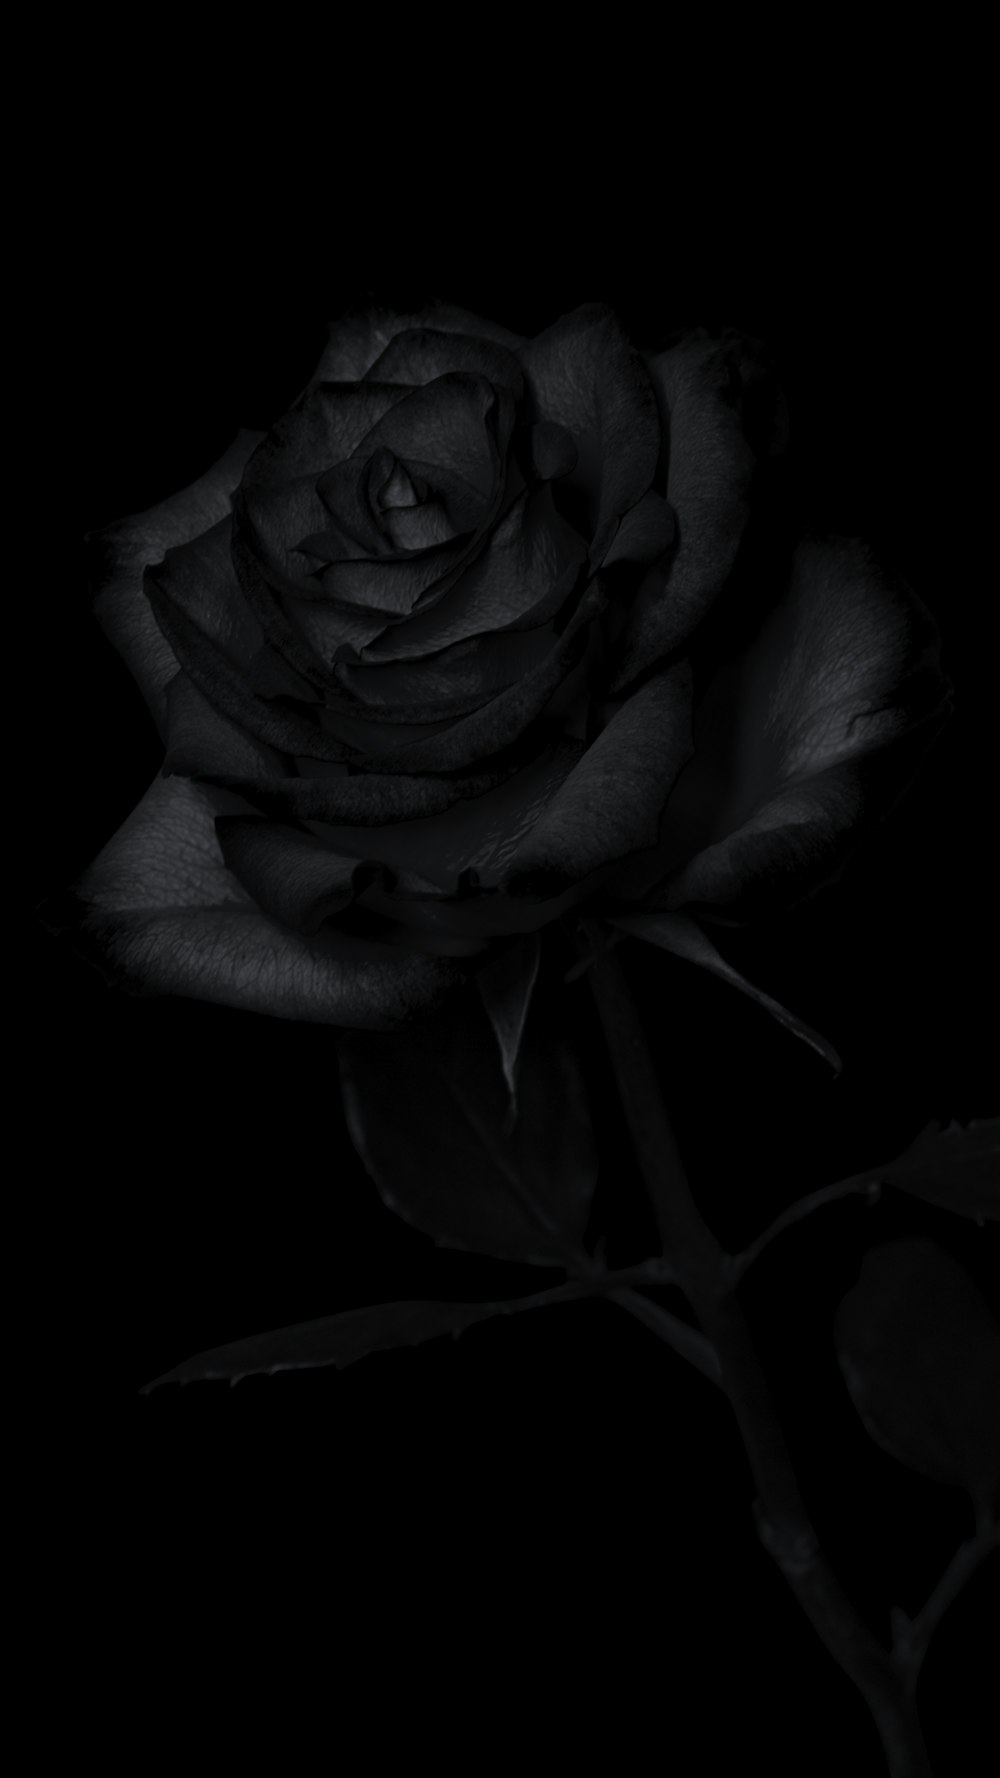 Ảnh Background black rose nền đen với hình ảnh hoa hồng đen